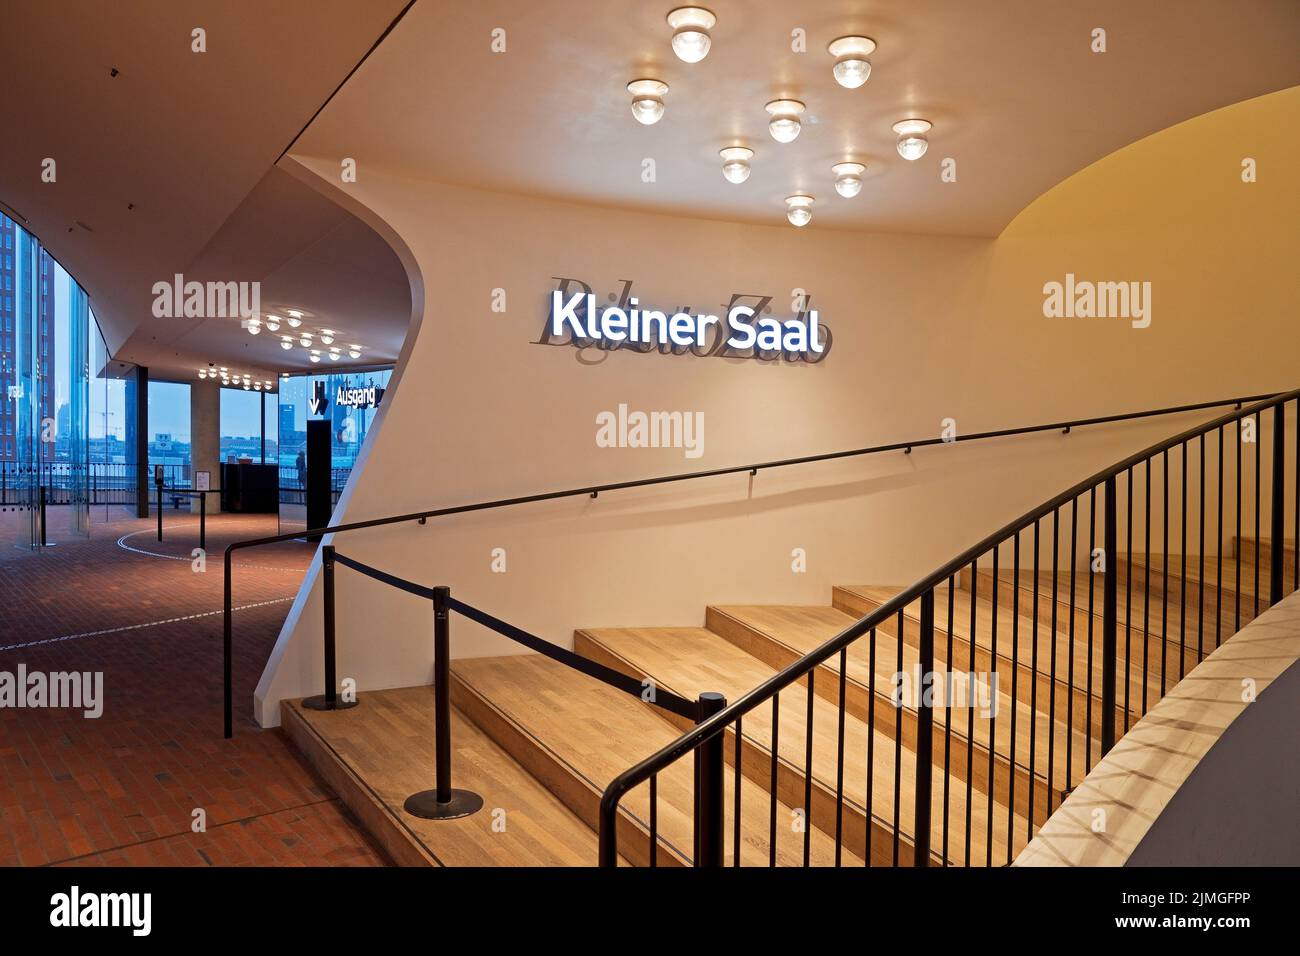 Plaza mit Ziegelsteinboden und Zugang zum kleinen Konzertsaal, oeffentliche Aussichtsplattform, Elbphilharmonie, Hamburg, Deutschland, Europa Stock Photo